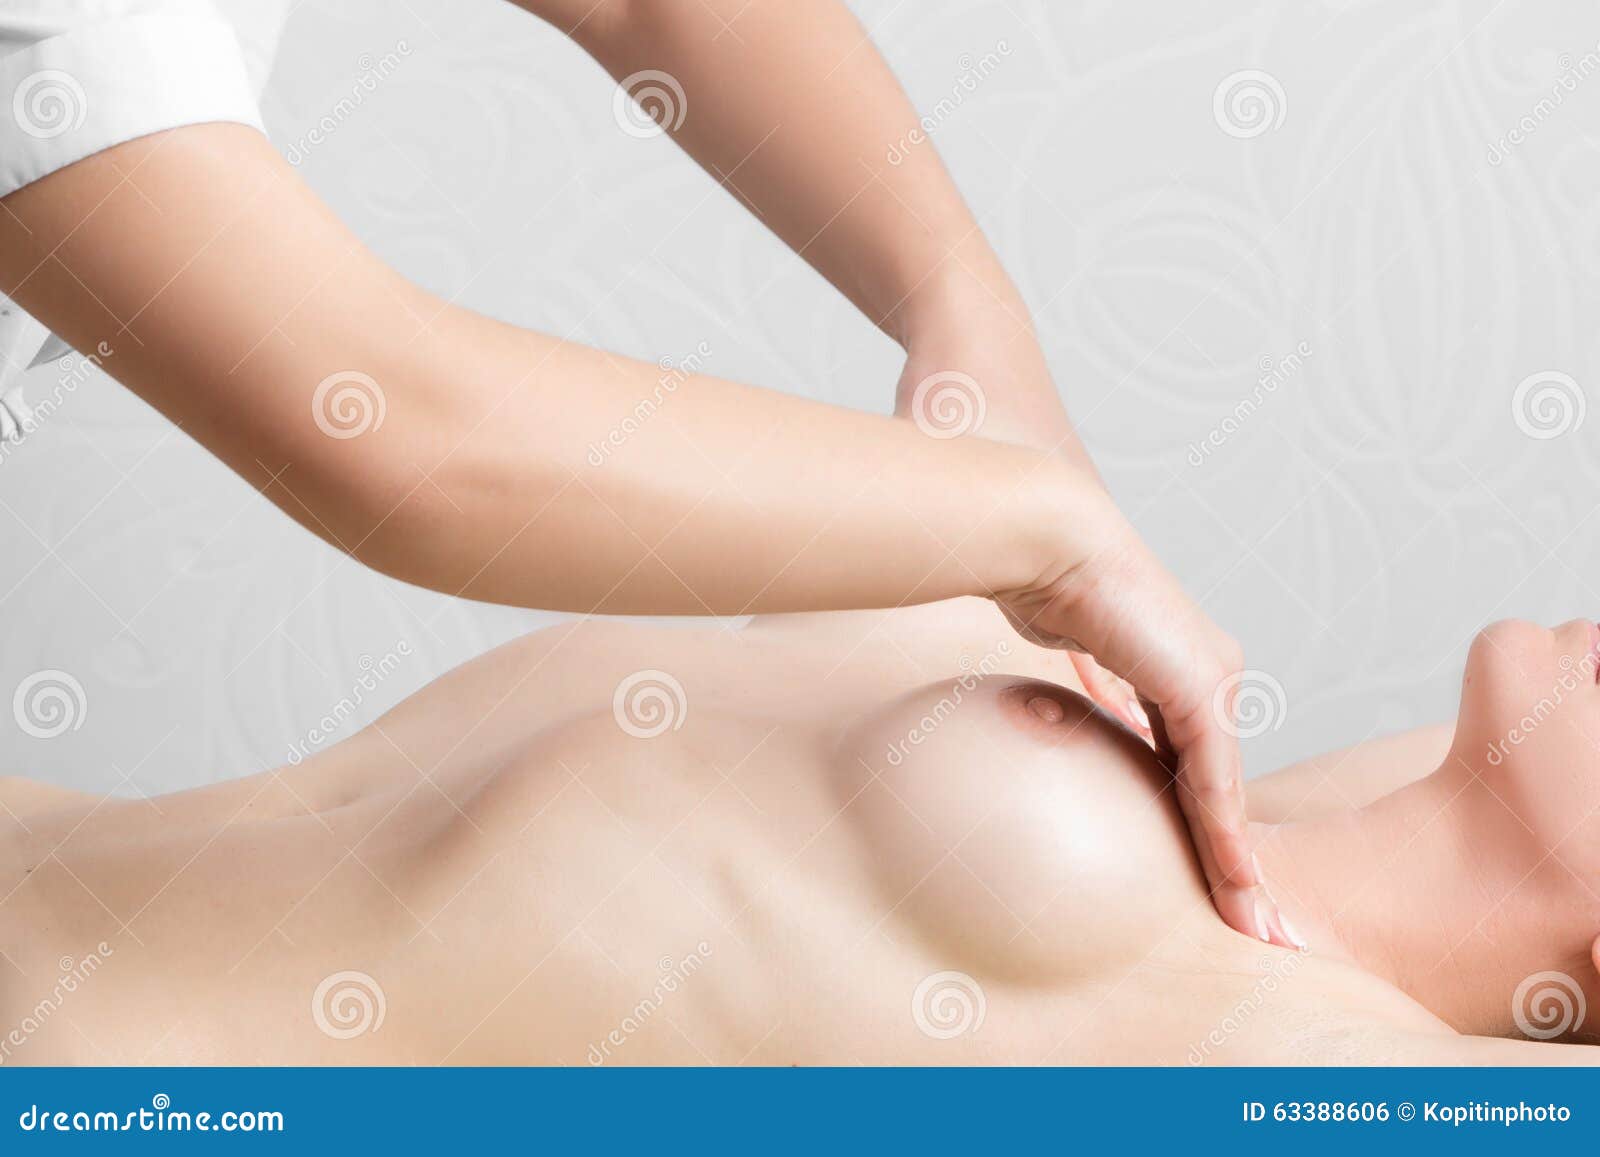 массаж грудью в москве фото 98